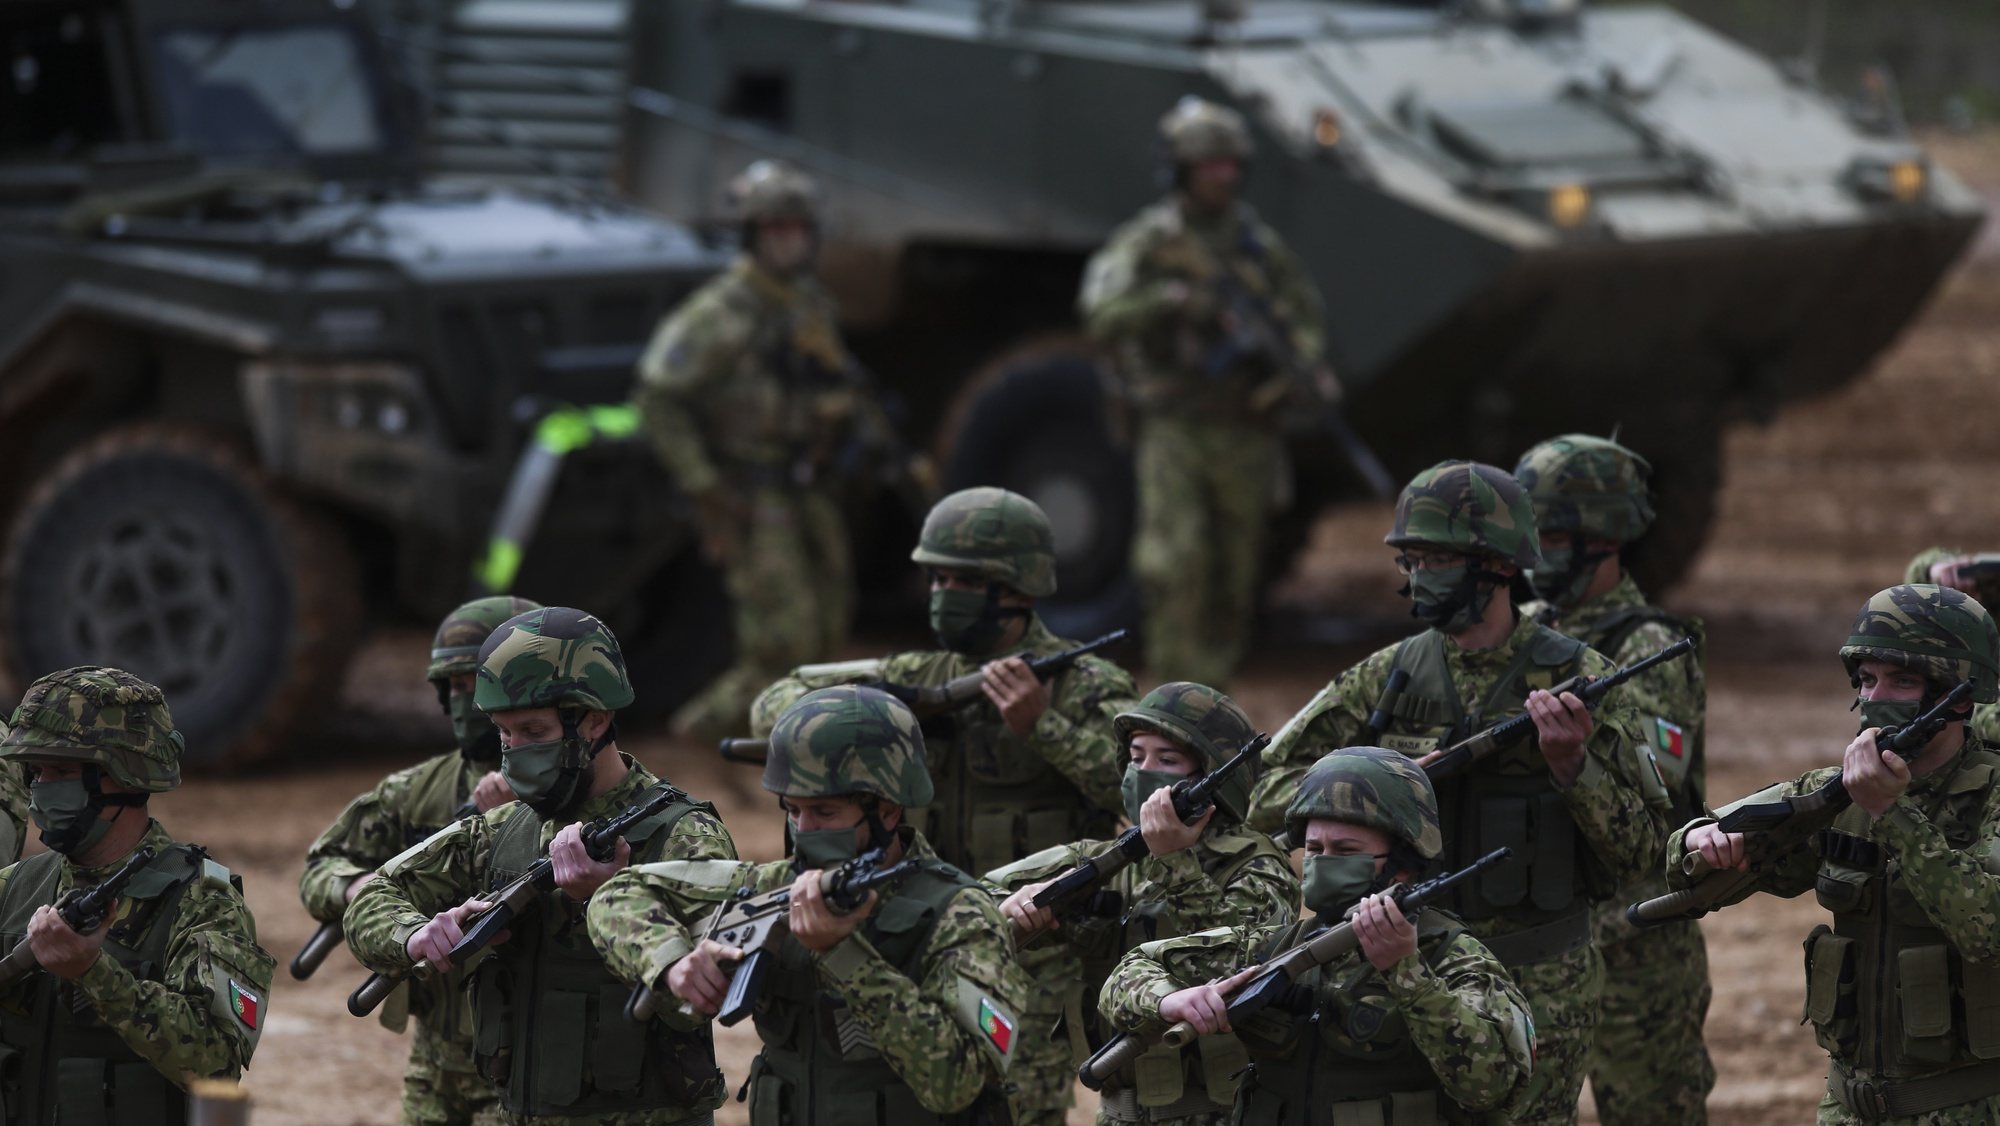 Militares participam na demonstração tática da Companhia do Exército que será projetada para a Roménia, no âmbito da NATO, no Campo Militar de Santa Margarida, em Constância, 22 de março de 2022. PAULO CUNHA/LUSA